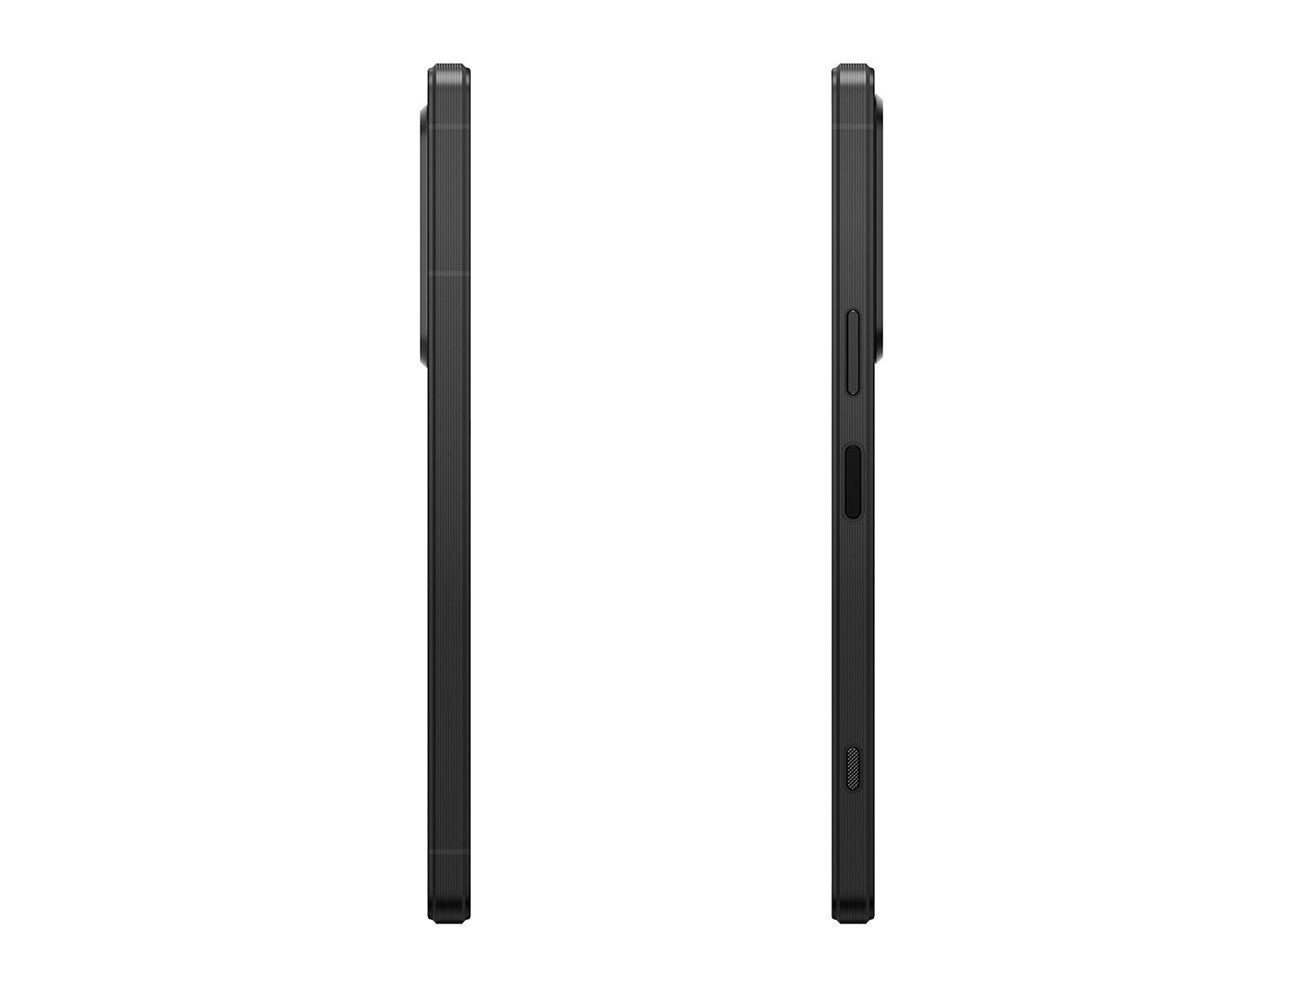 Sony Xperia 1V 5G Dual SIM 512GB, 12GB RAM Phone - Black